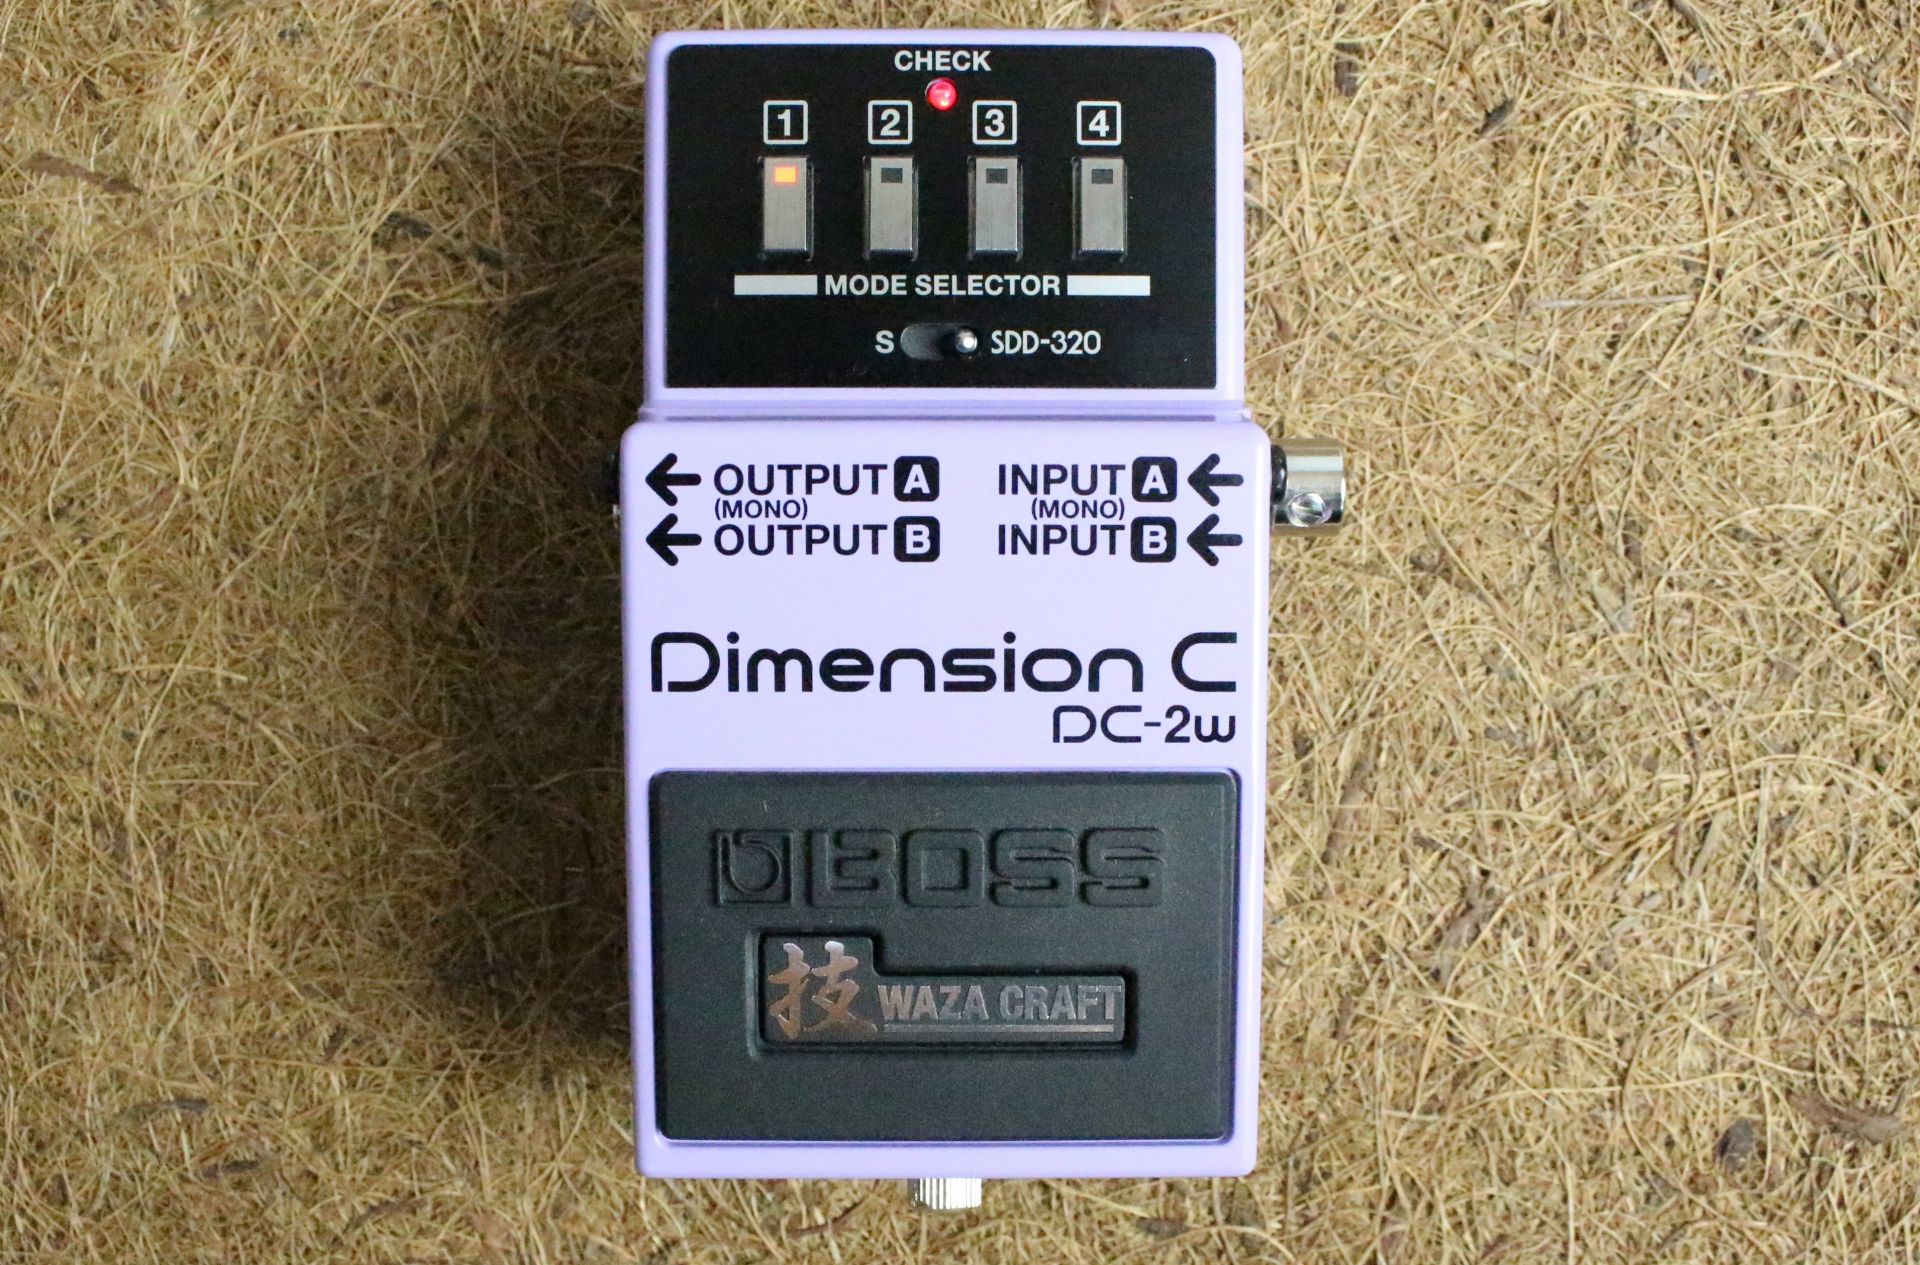 独創的な立体サウンドを出力できることで人気の名機、Dimension CとDimension Dのサウンドを搭載し、さらにブラッシュアップしたモデル。各スイッチにプリセットされたサウンドは、バンドアンサンブルや楽曲にほど良く馴染み、かつ新しい響きを加えてくれる効果があります。  中央に配したスイッチにより、Dimension C(S)とSDD-320 "Dimension D"のサウンドを切り替えて使うことが可能です。